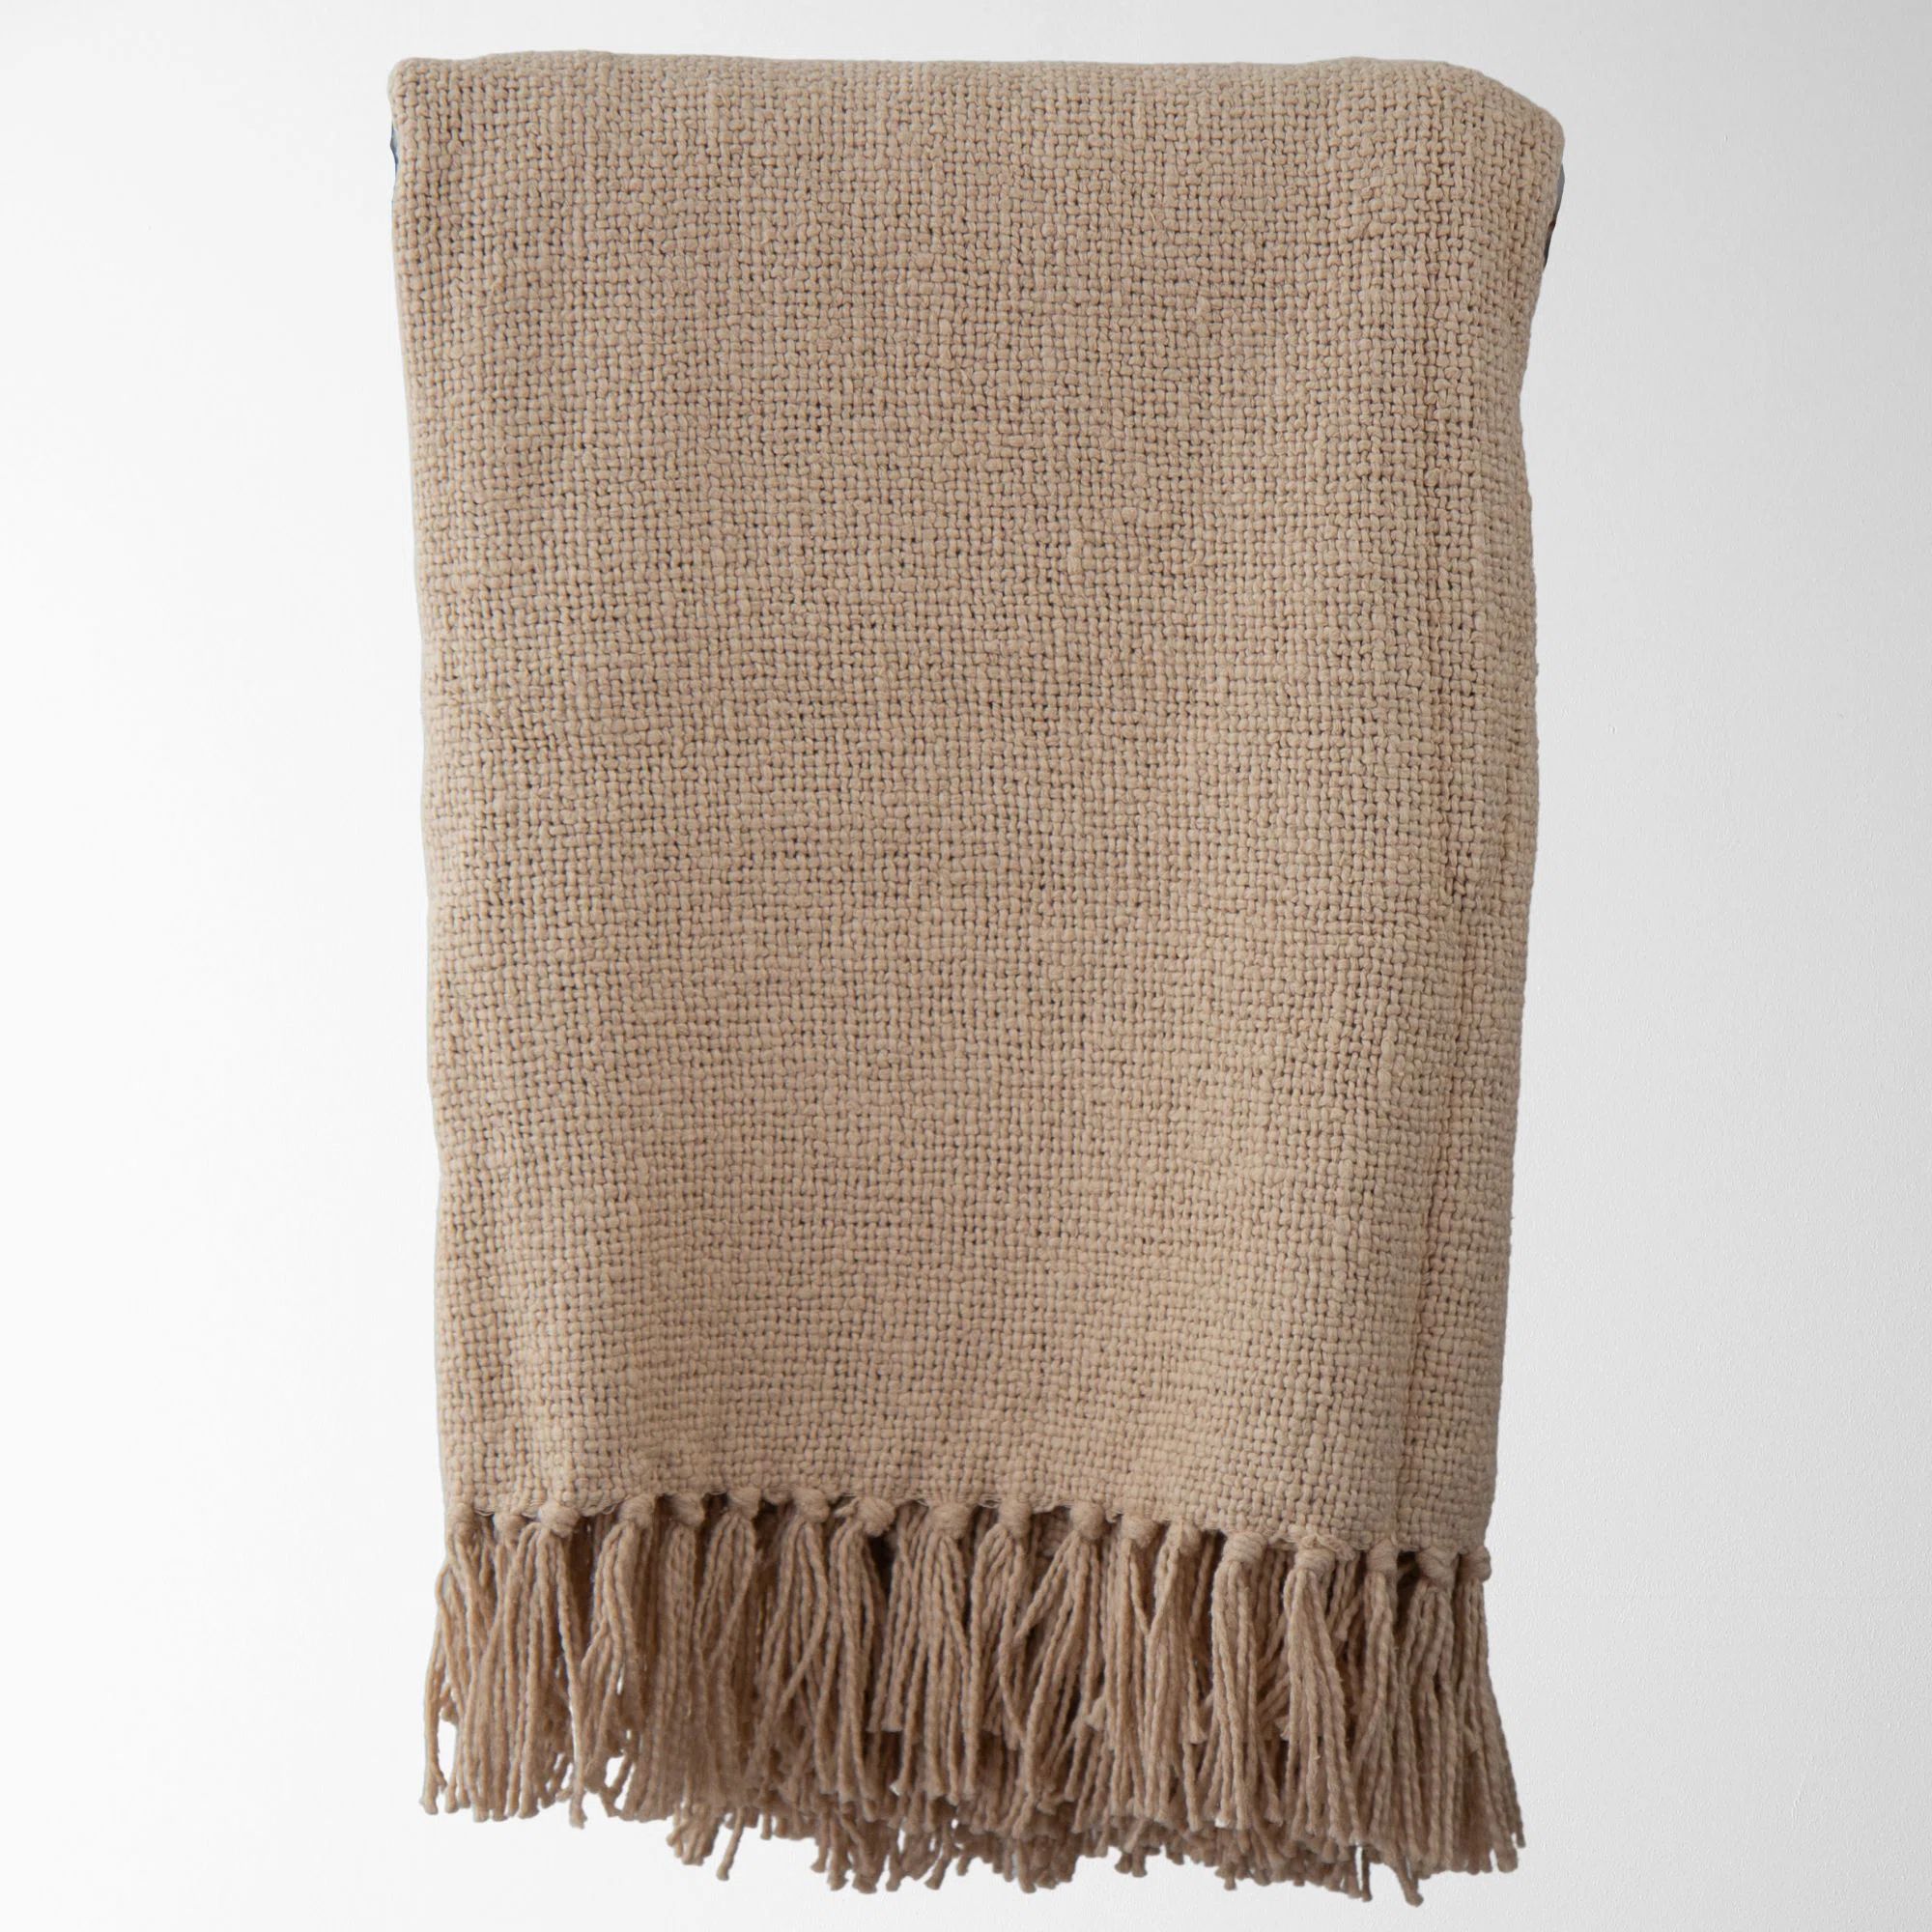 Cajan Knitted Throw Blanket | Wayfair North America